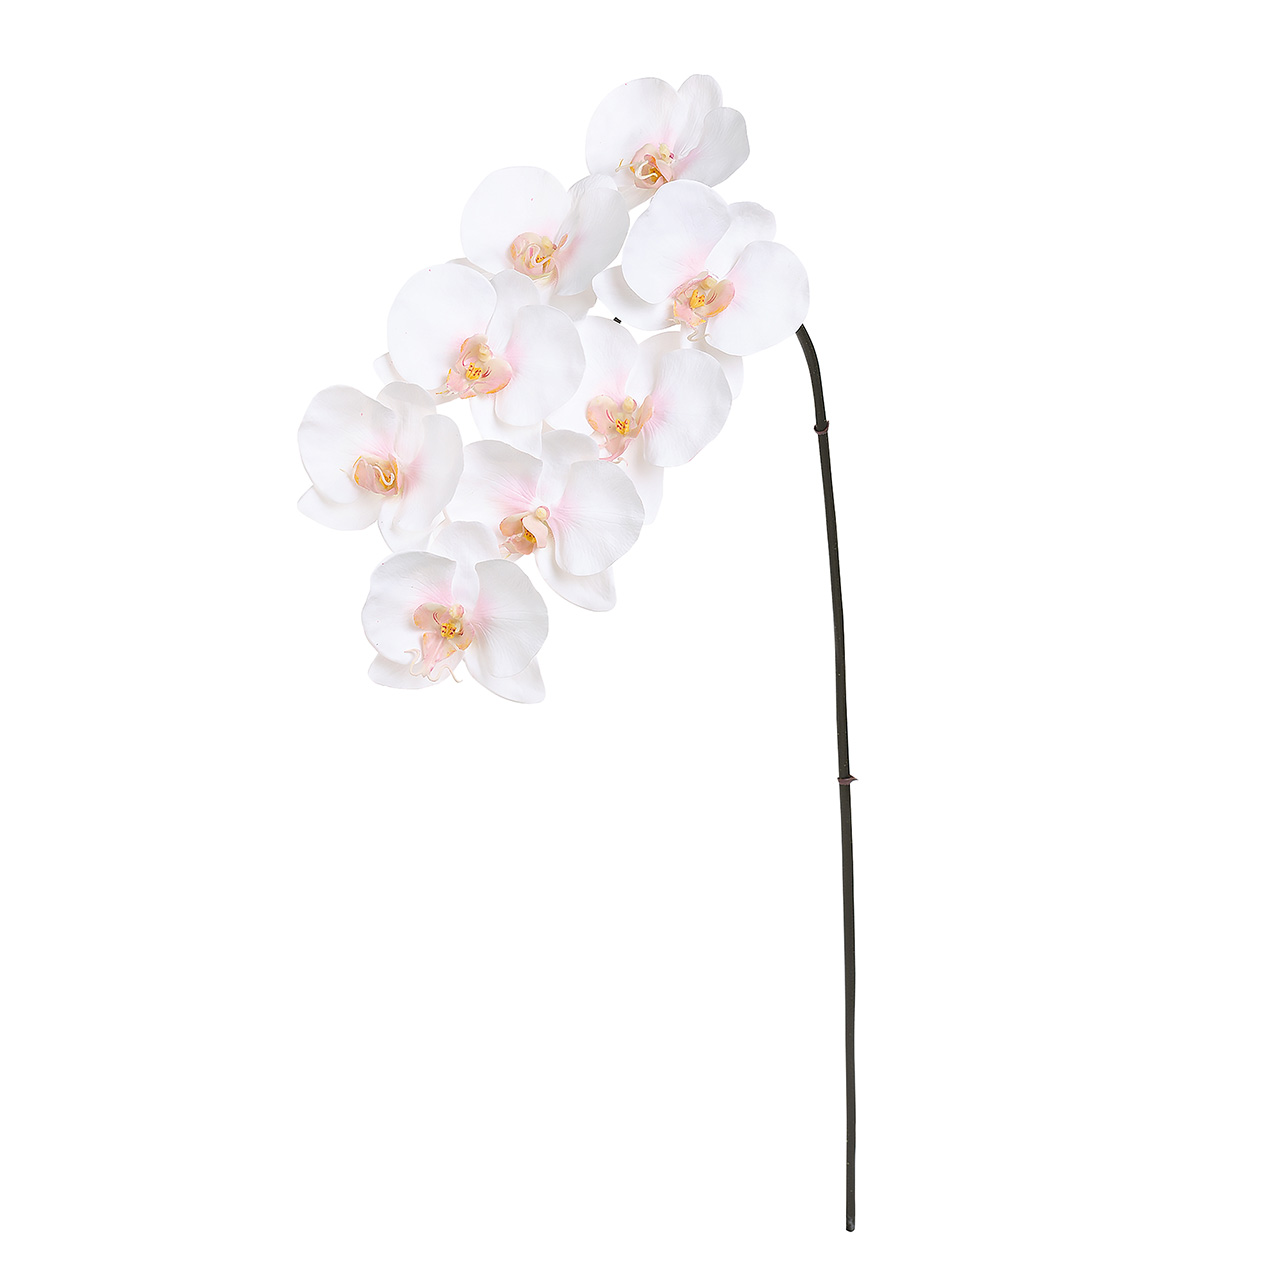 マイフラ 通販 Winward マリアファレノプシス ホワイト ピンク アーティフィシャルフラワー 造花 Fw 胡蝶蘭 ファレノ 花径11 長さ 約95cm ホワイト ピンク Magiq アーティフィシャルフラワー 造花 全国にmagiq 花器 花資材などをお届けします